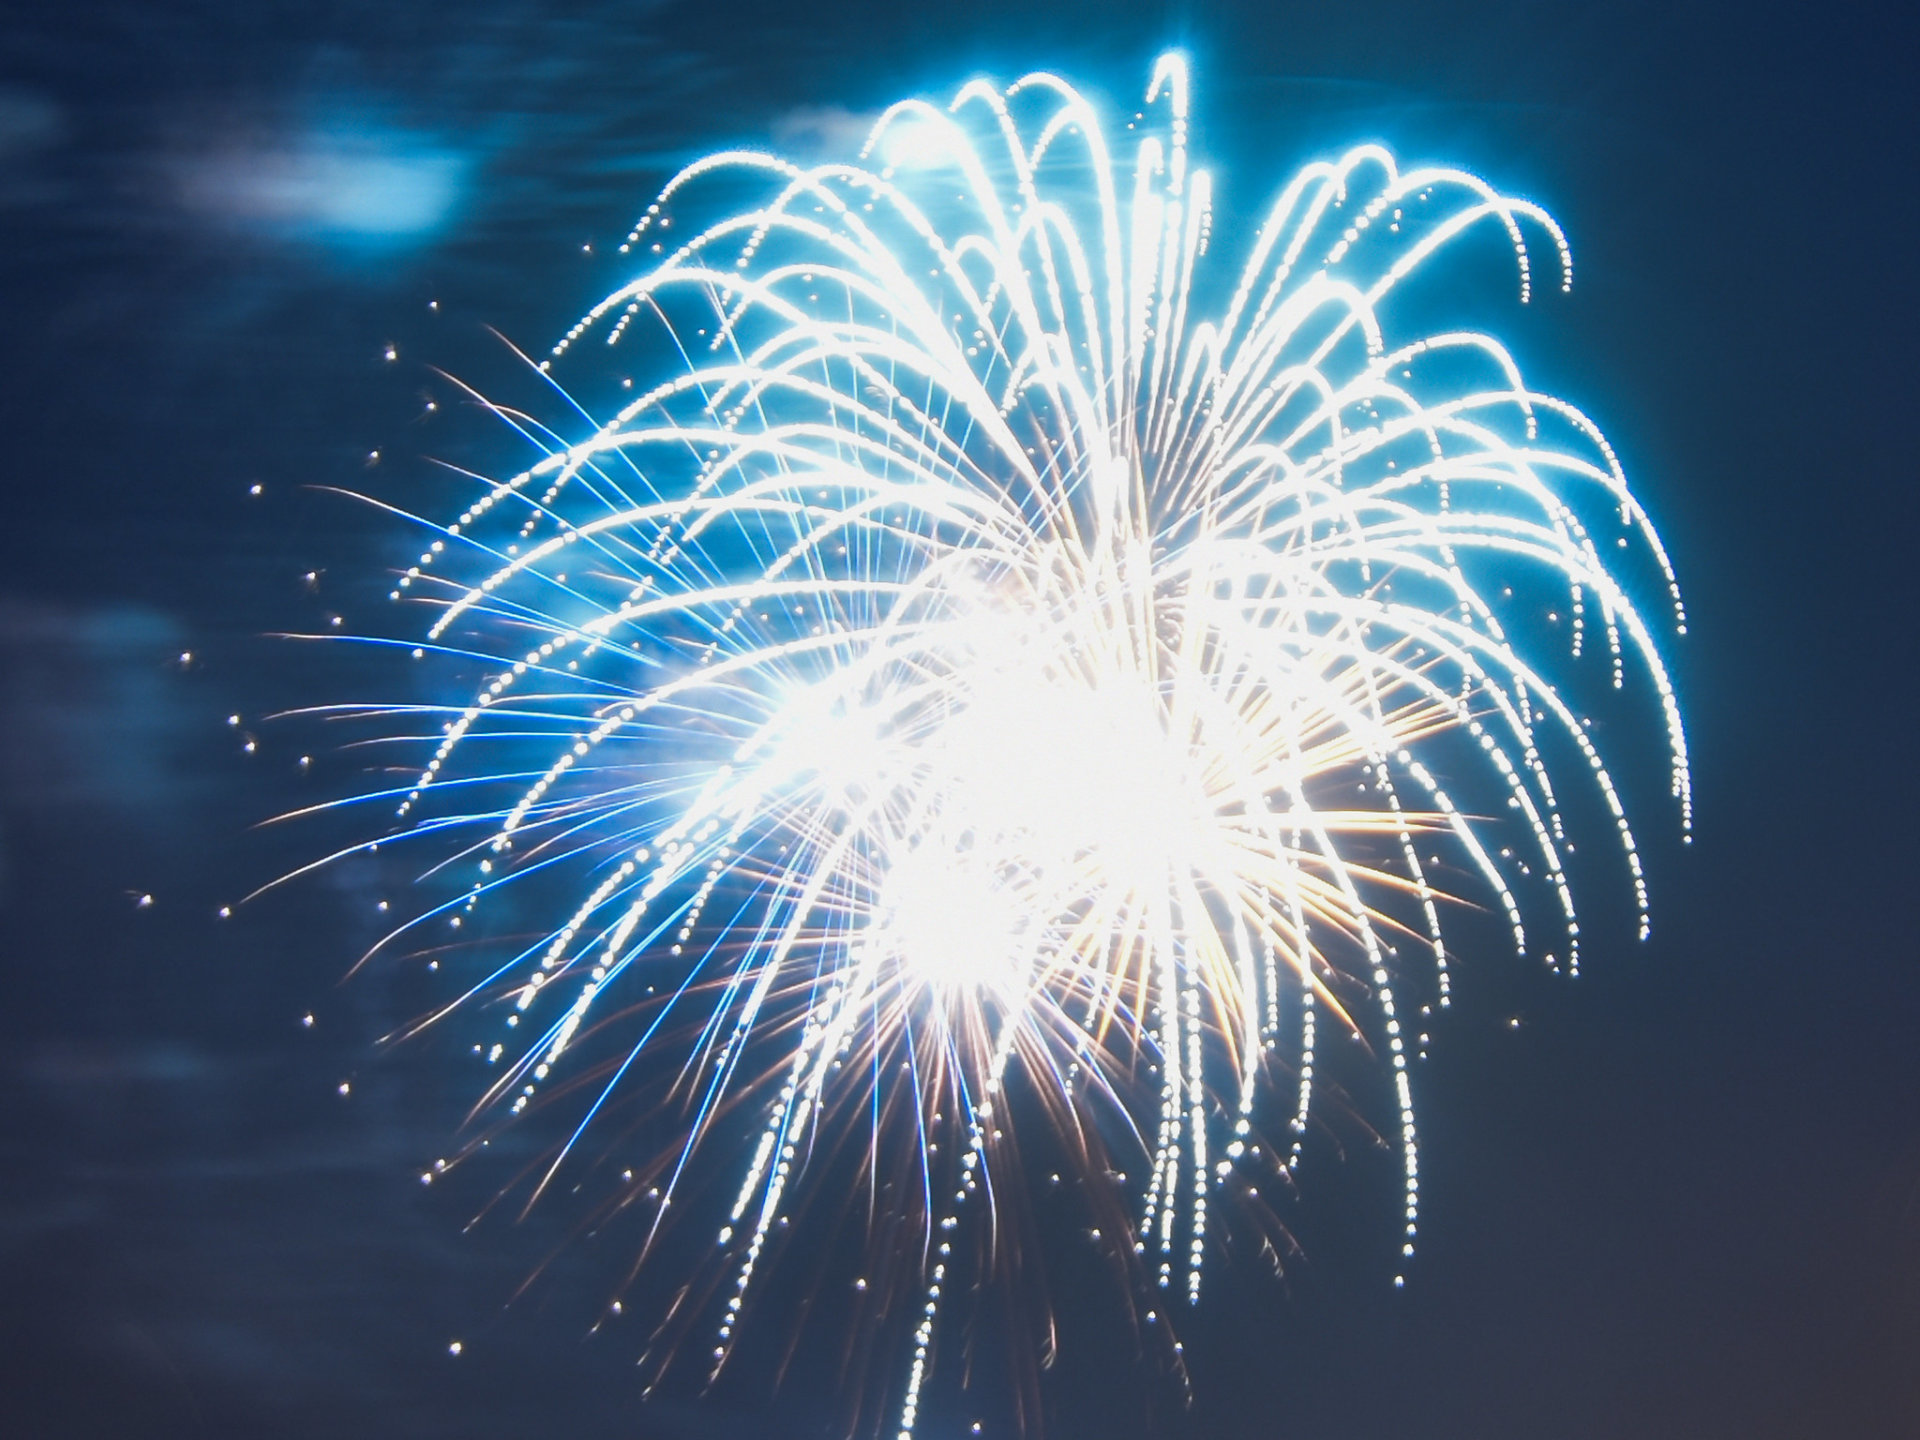 Mentor Wochenendaktivitäten & Feuerwerk am 4. Juli (Independence Day)